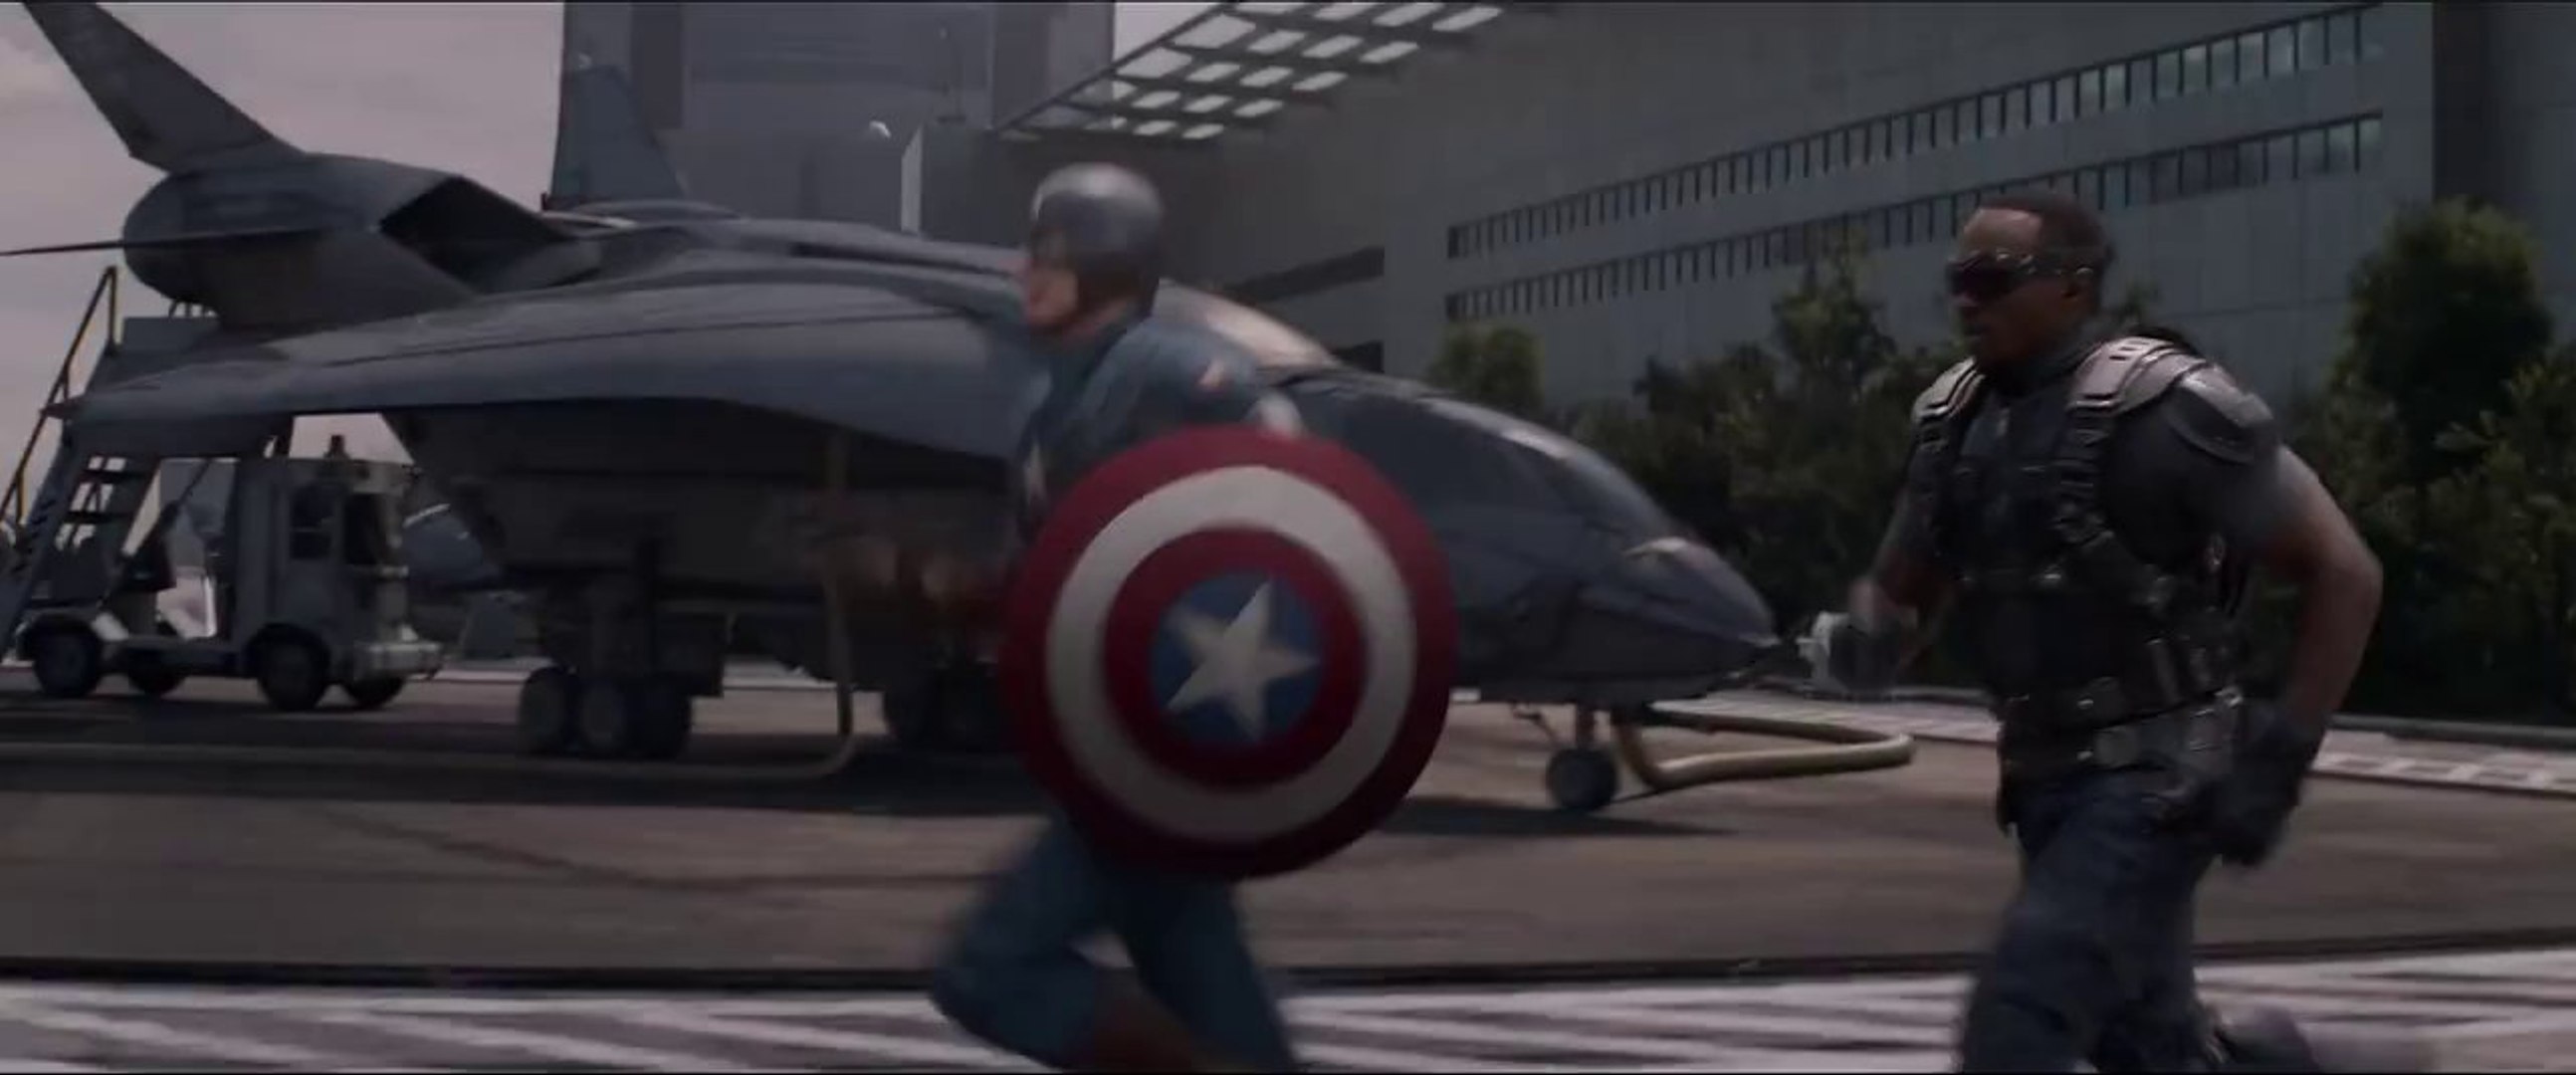 Capitán América: El Soldado de Invierno' - Segundo tráiler español (HD) -  Vídeo Dailymotion